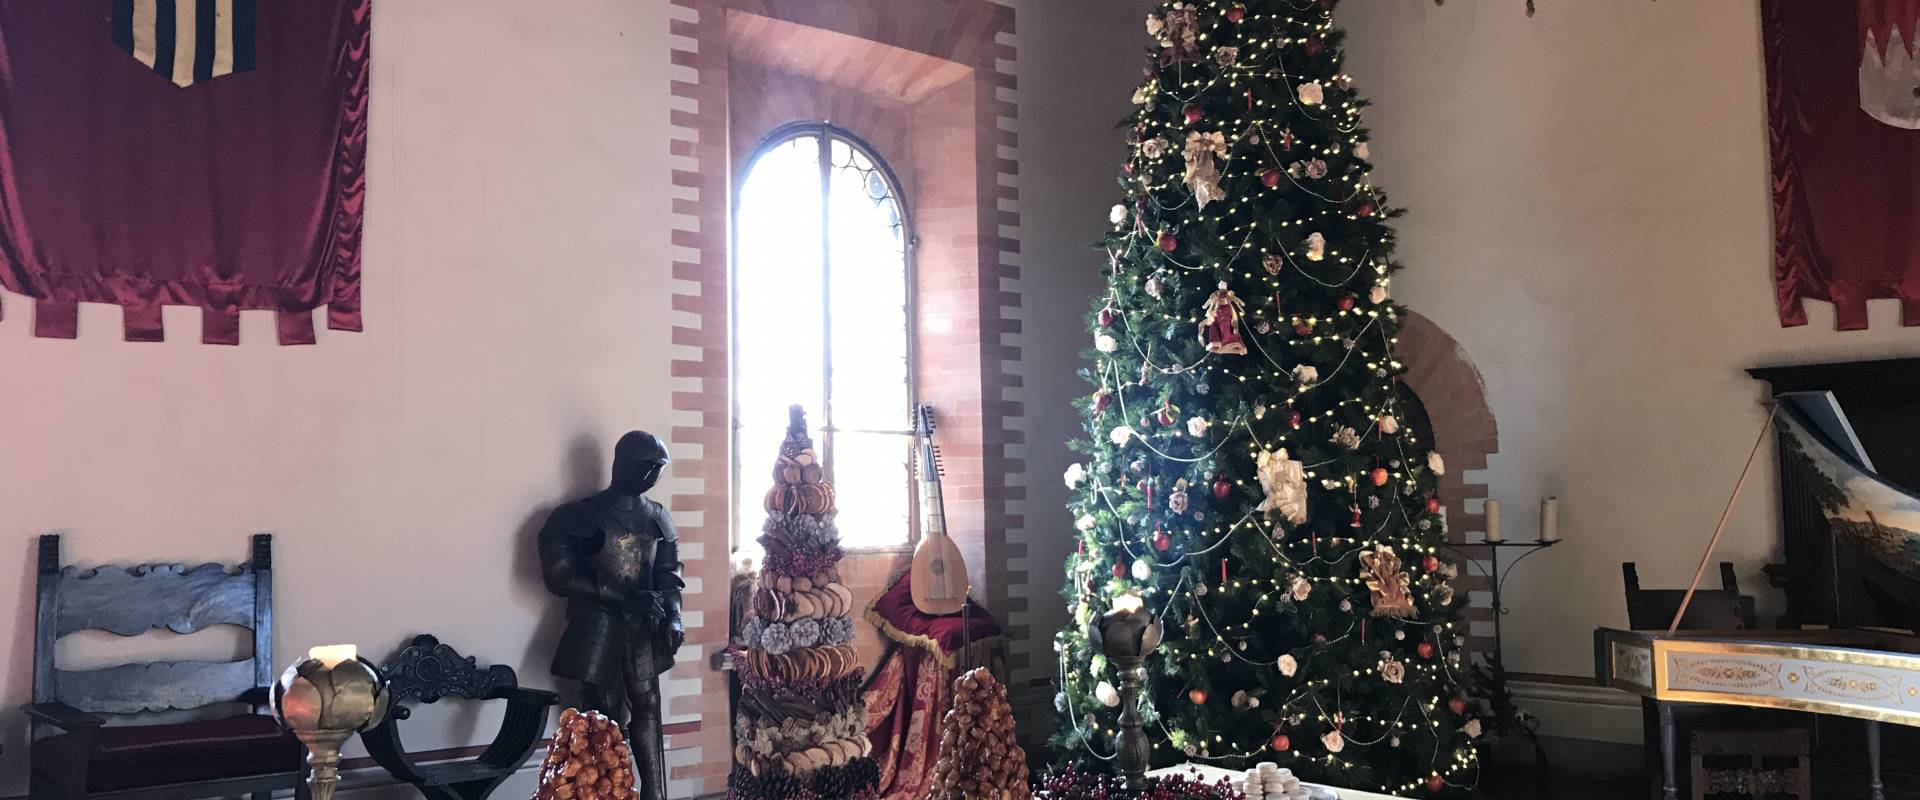 Castello di Gropparello - evento del Periodo Natalizio - "Castello d'Inverno - Magia del Natale Incantato" dal 1 dicembre al 20 gennaio foto di Rita Trecci Gibelli